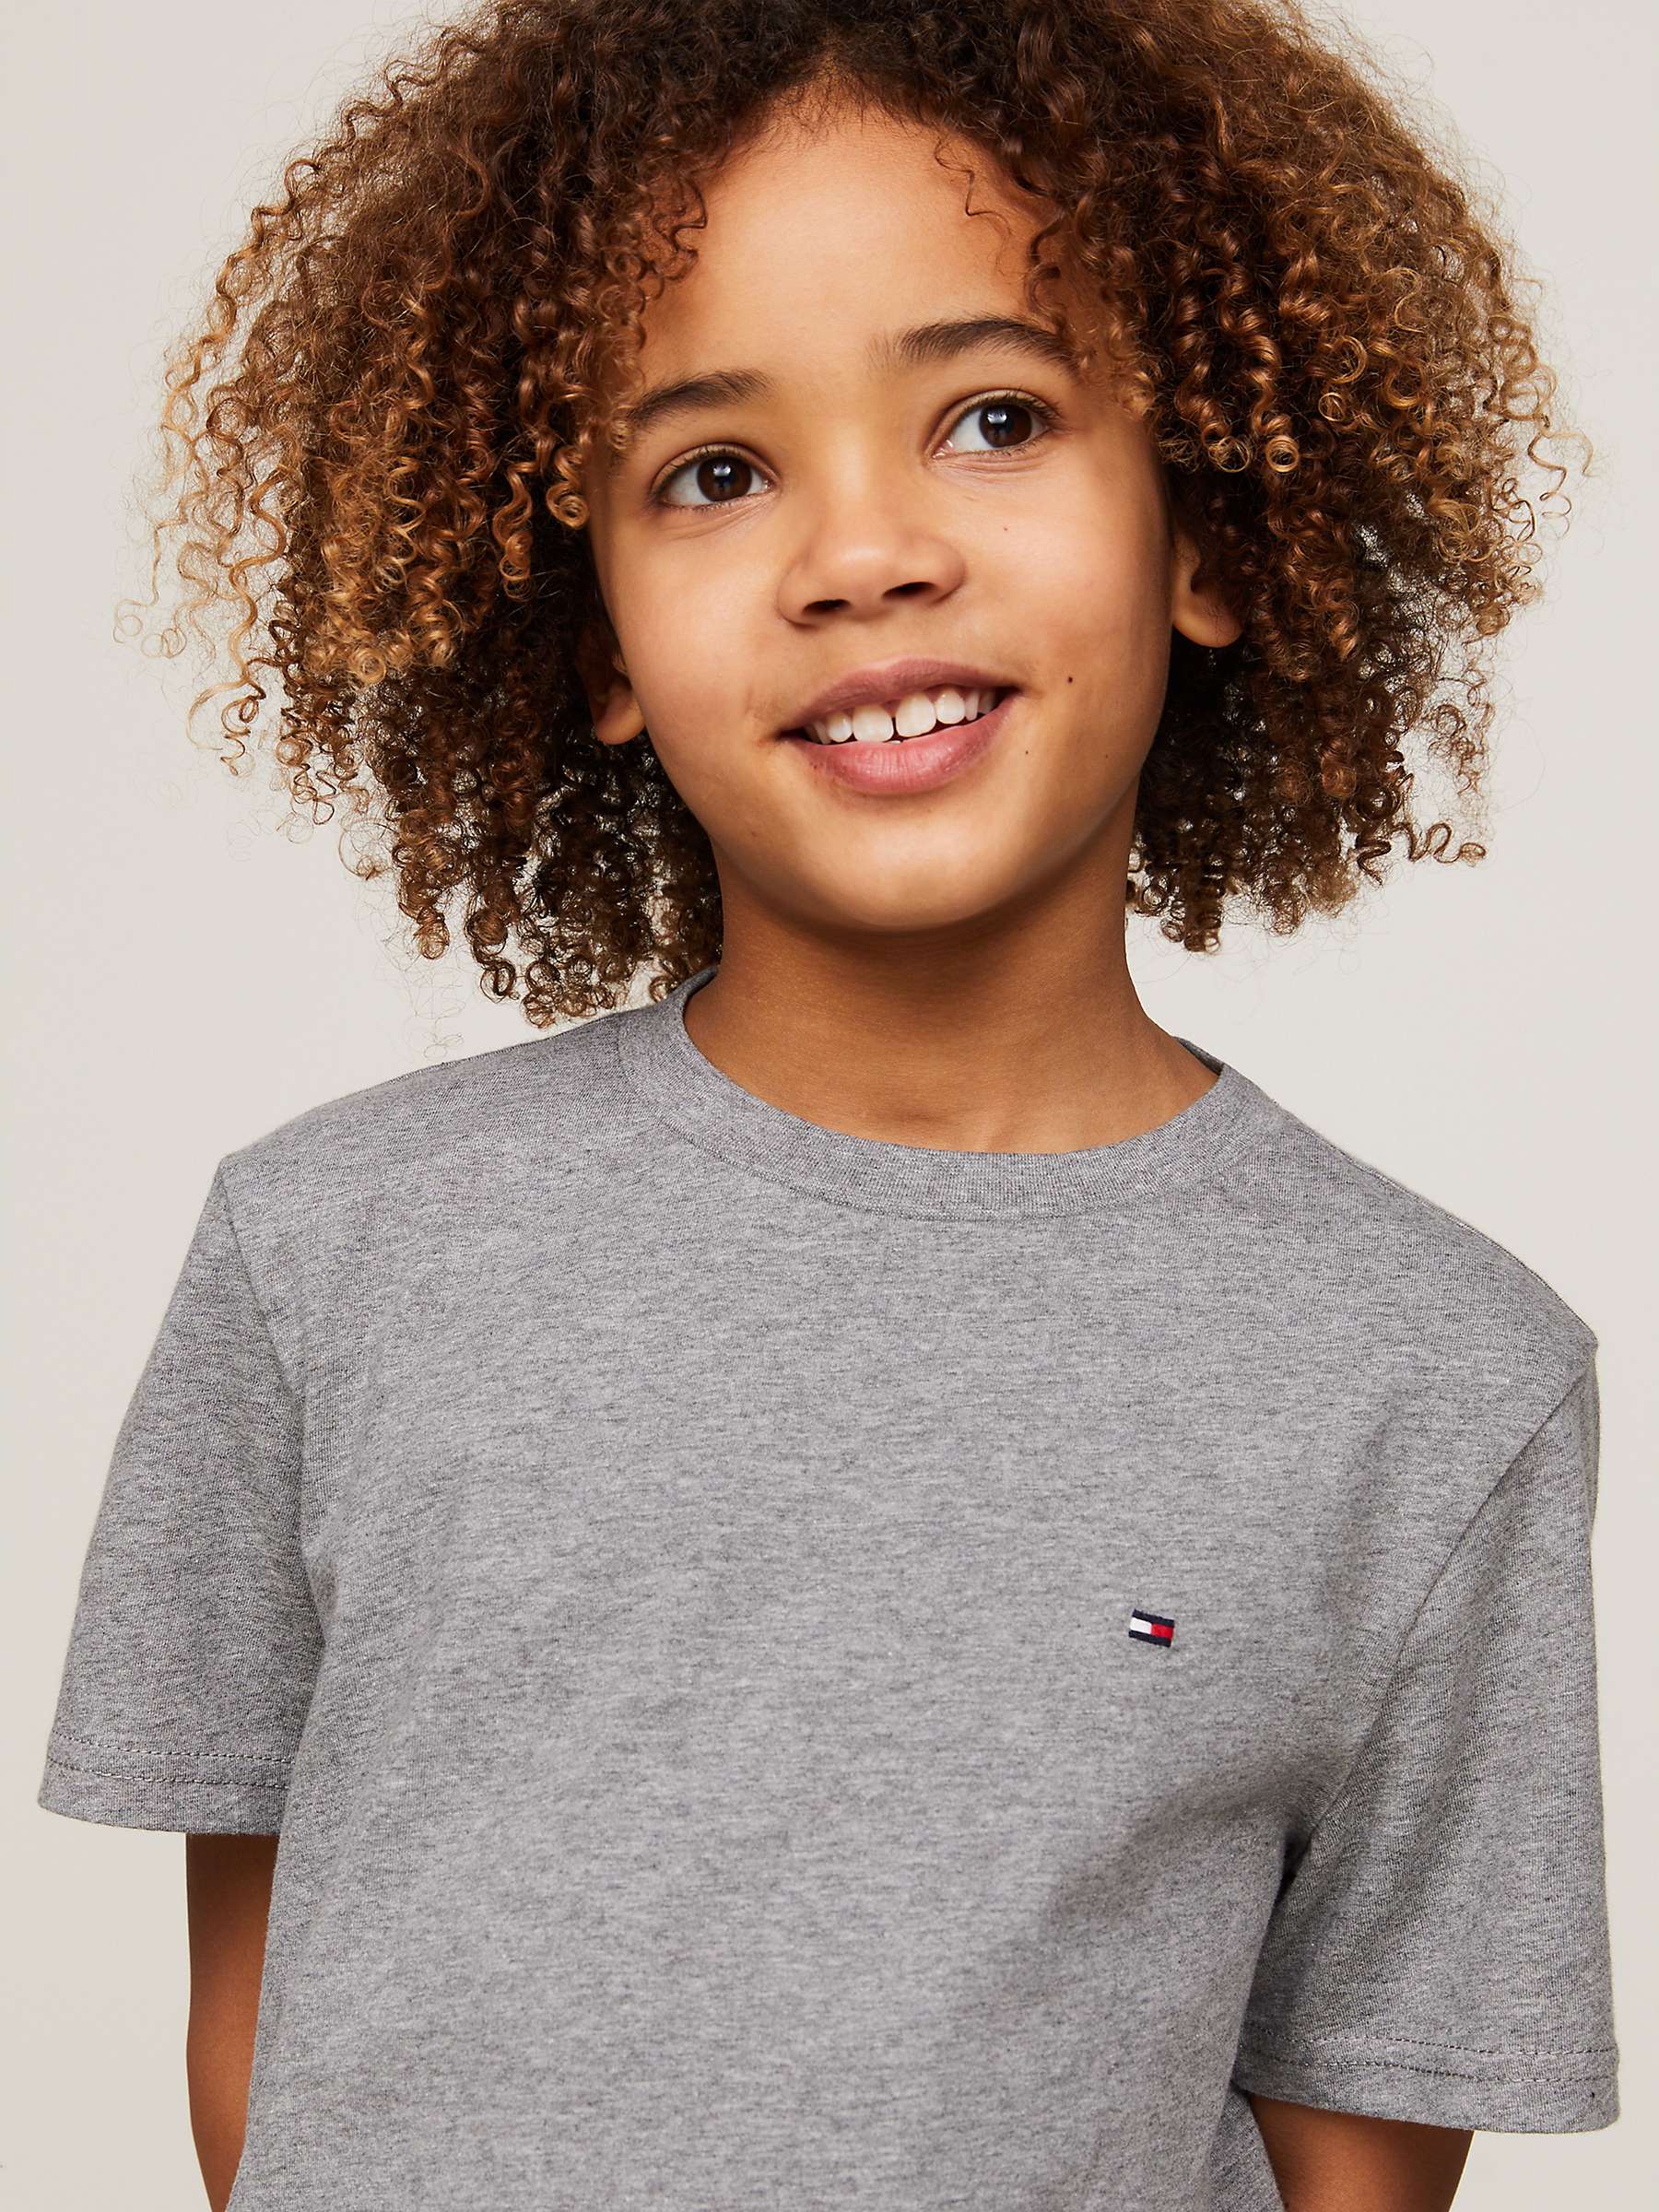 Buy Tommy Hilfiger Boy's 2 Pack T-Shirts, Grey/Black Online at johnlewis.com